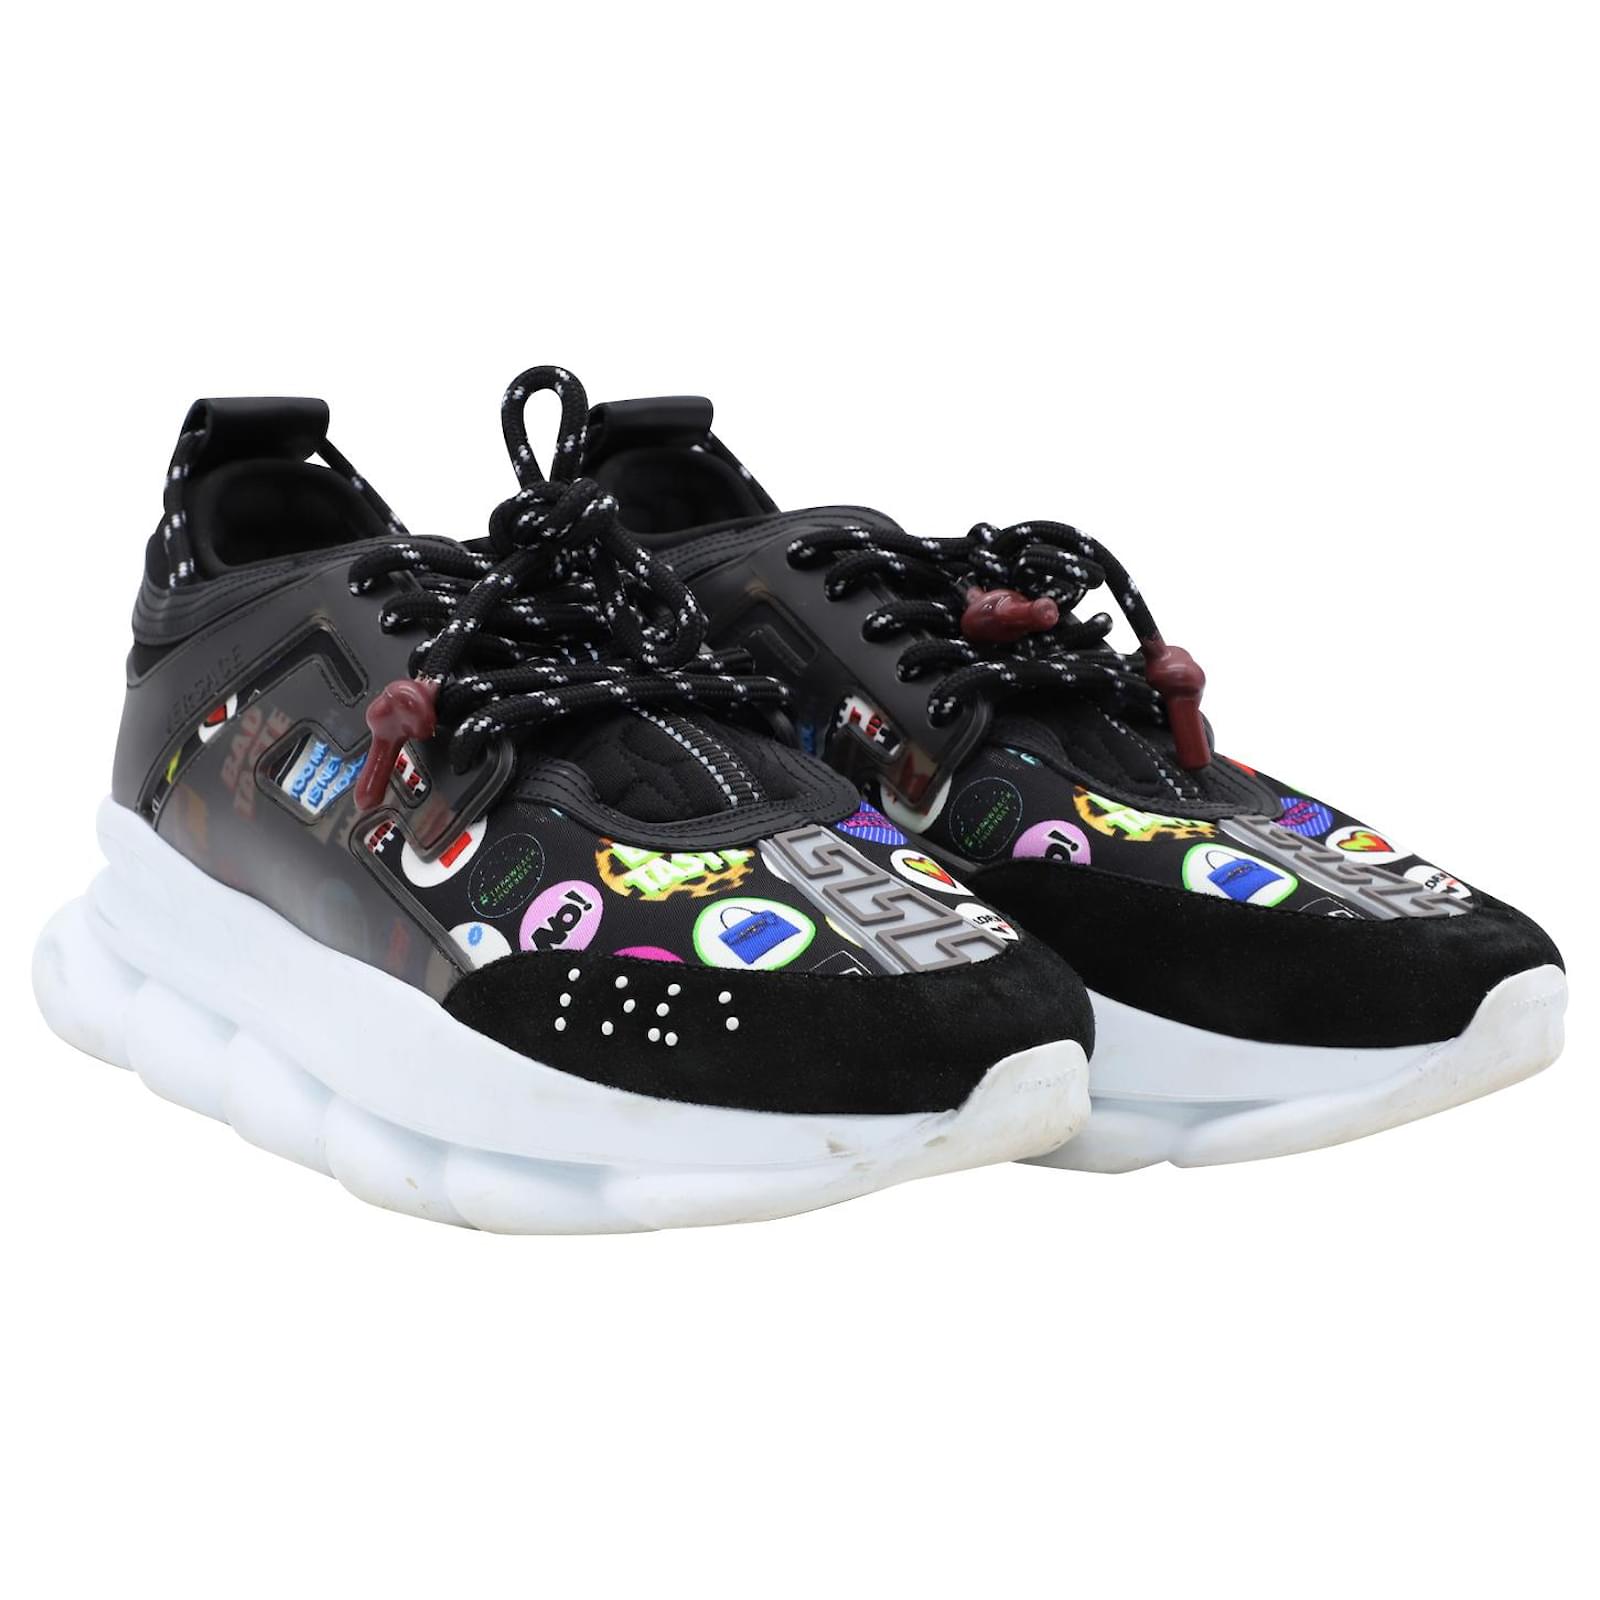 Versace Men's Chain Reaction Floral Sneakers, Brand Size 42 (US Size 9)  DSU7071E D19TG DW72 - Shoes - Jomashop